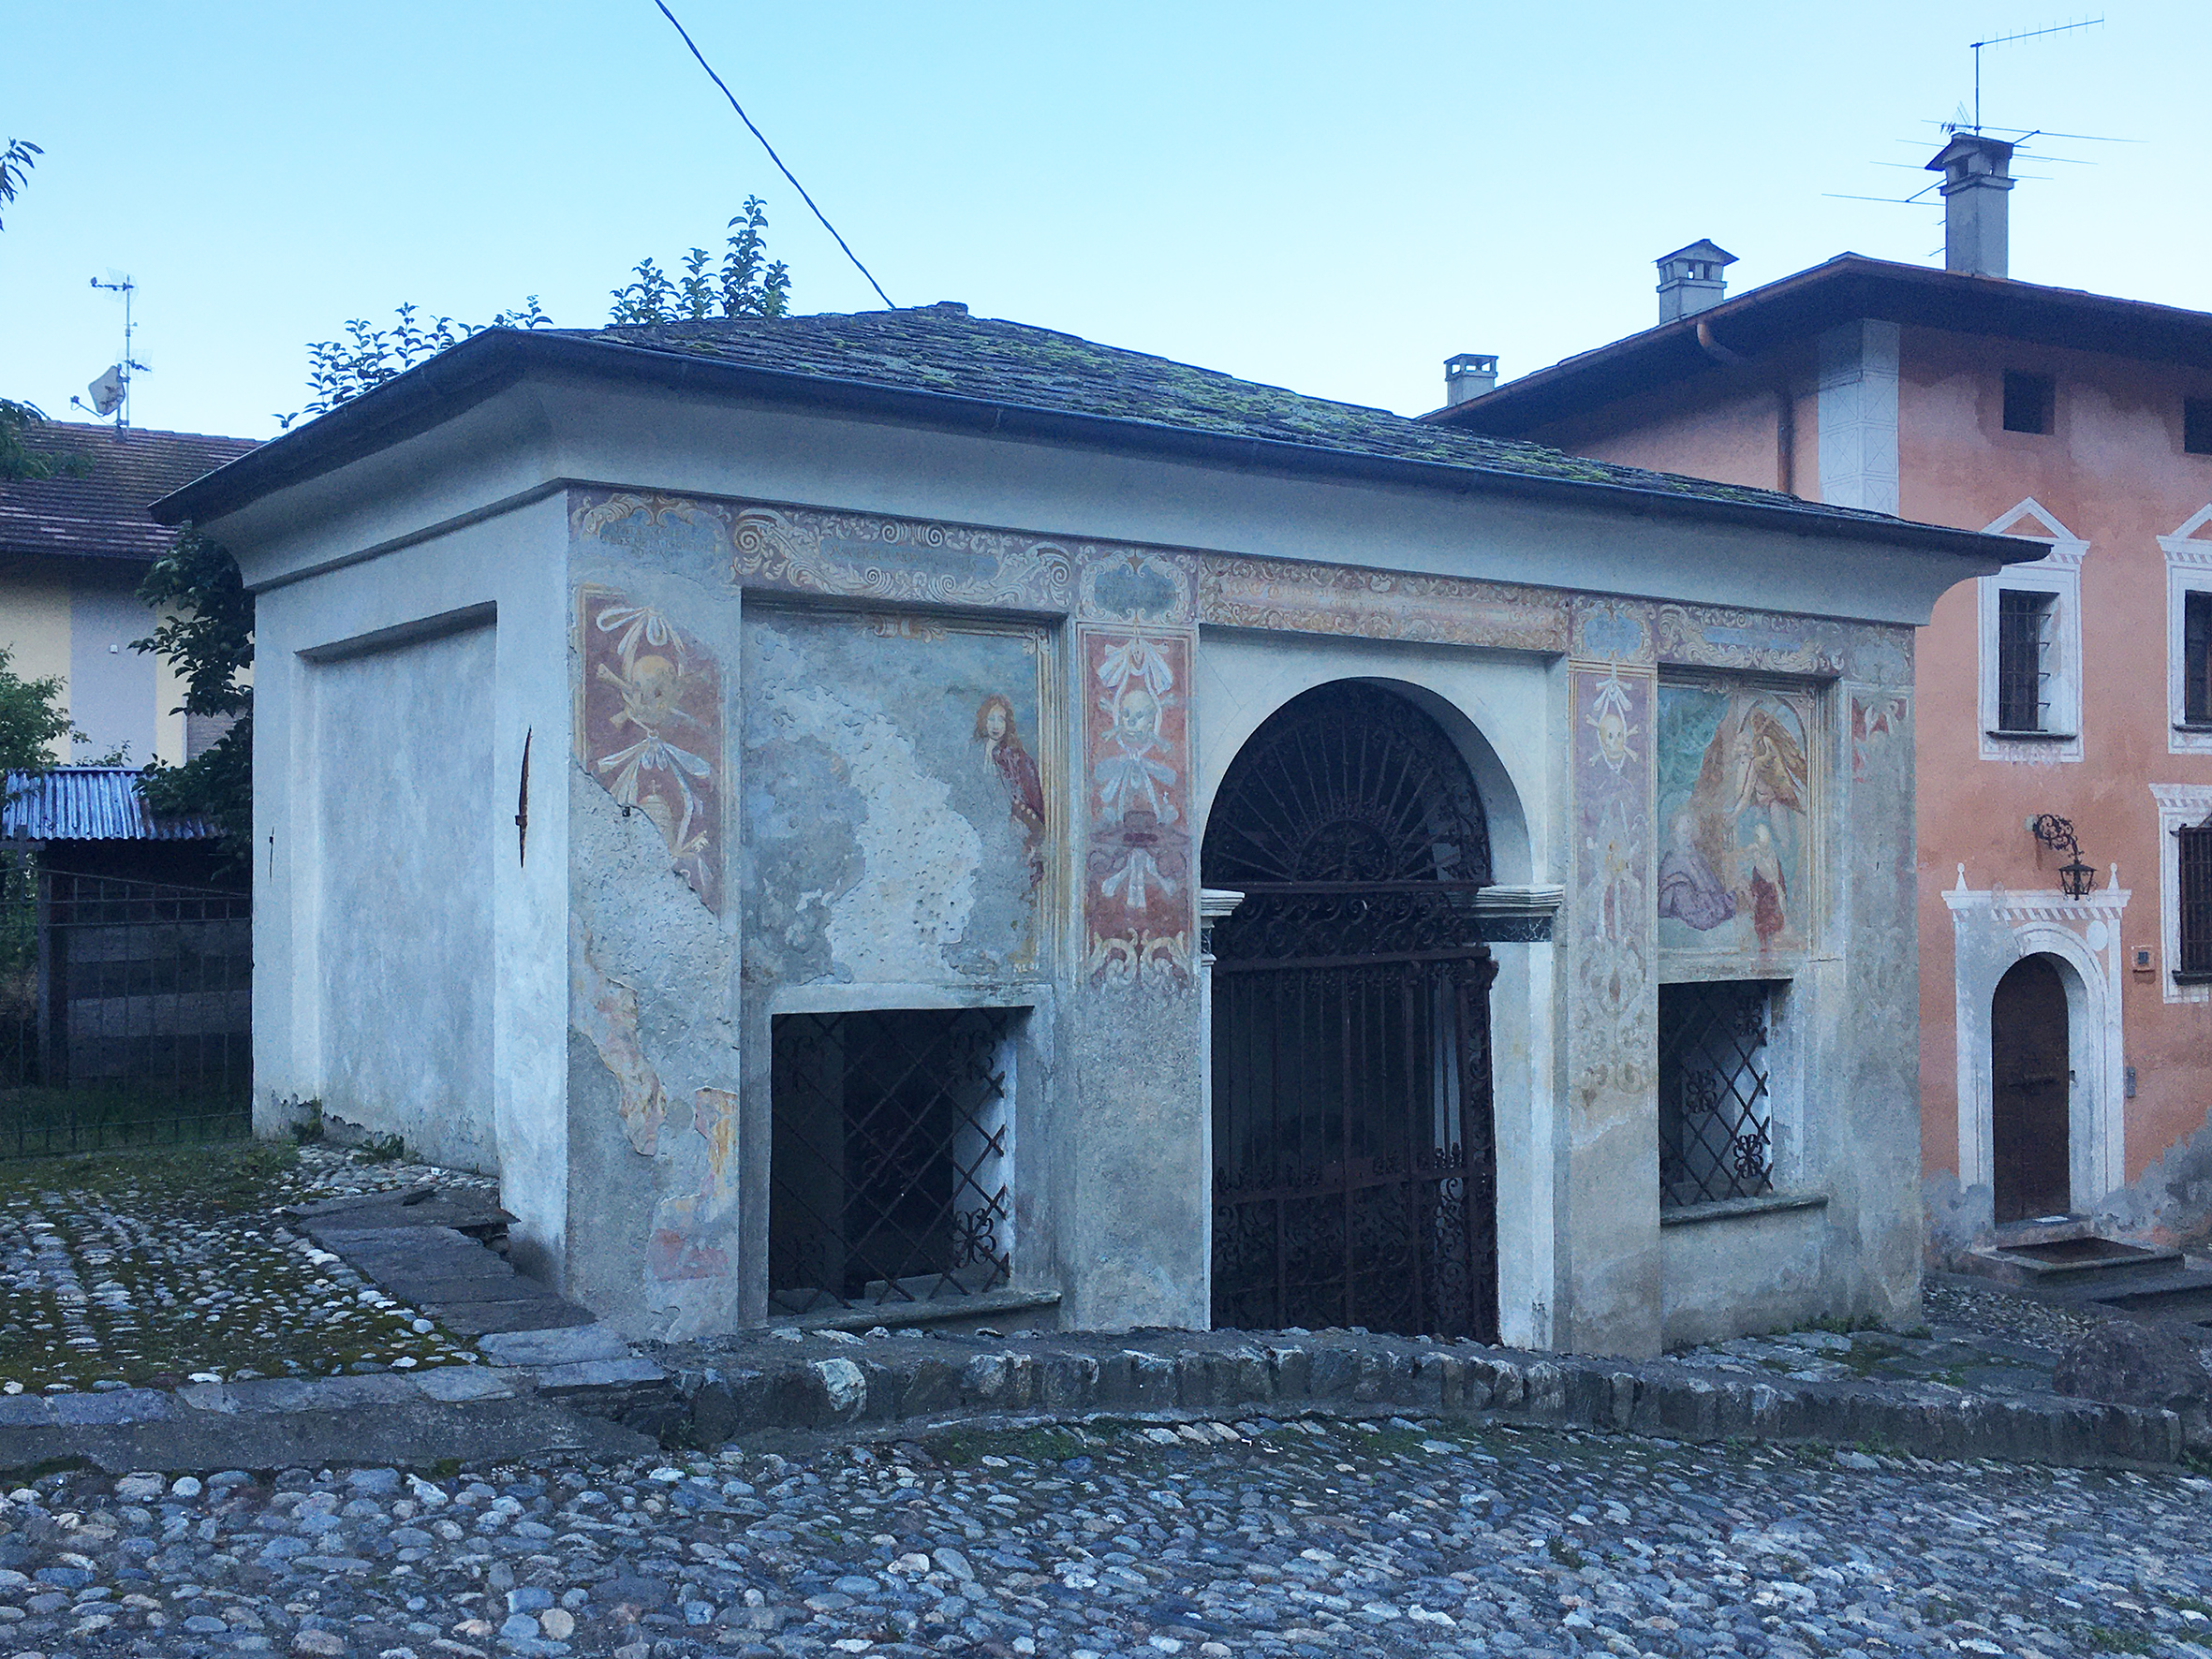 Ossario di S. Abbondio (ossario) - Villa di Tirano (SO) 